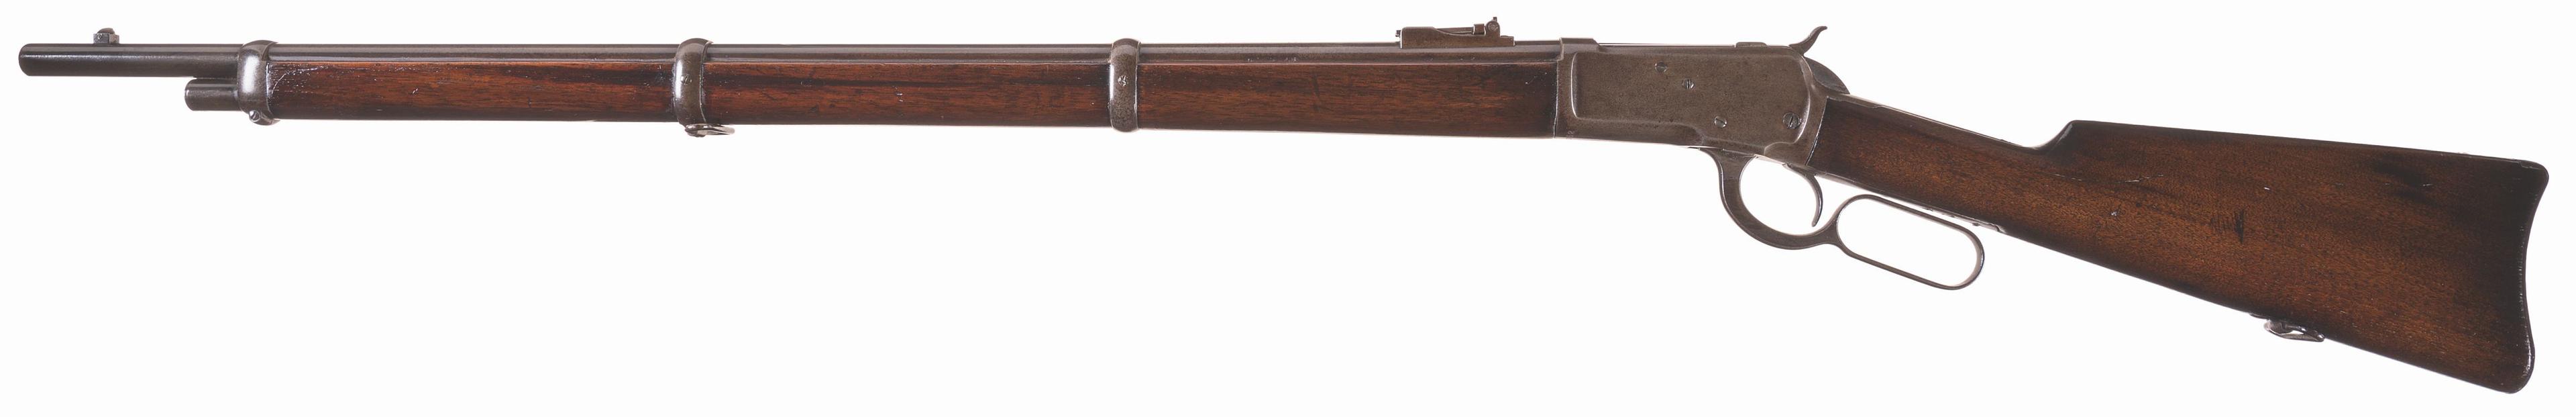 Rare Winchester Model 1892 Musket in .44 W.C.F.